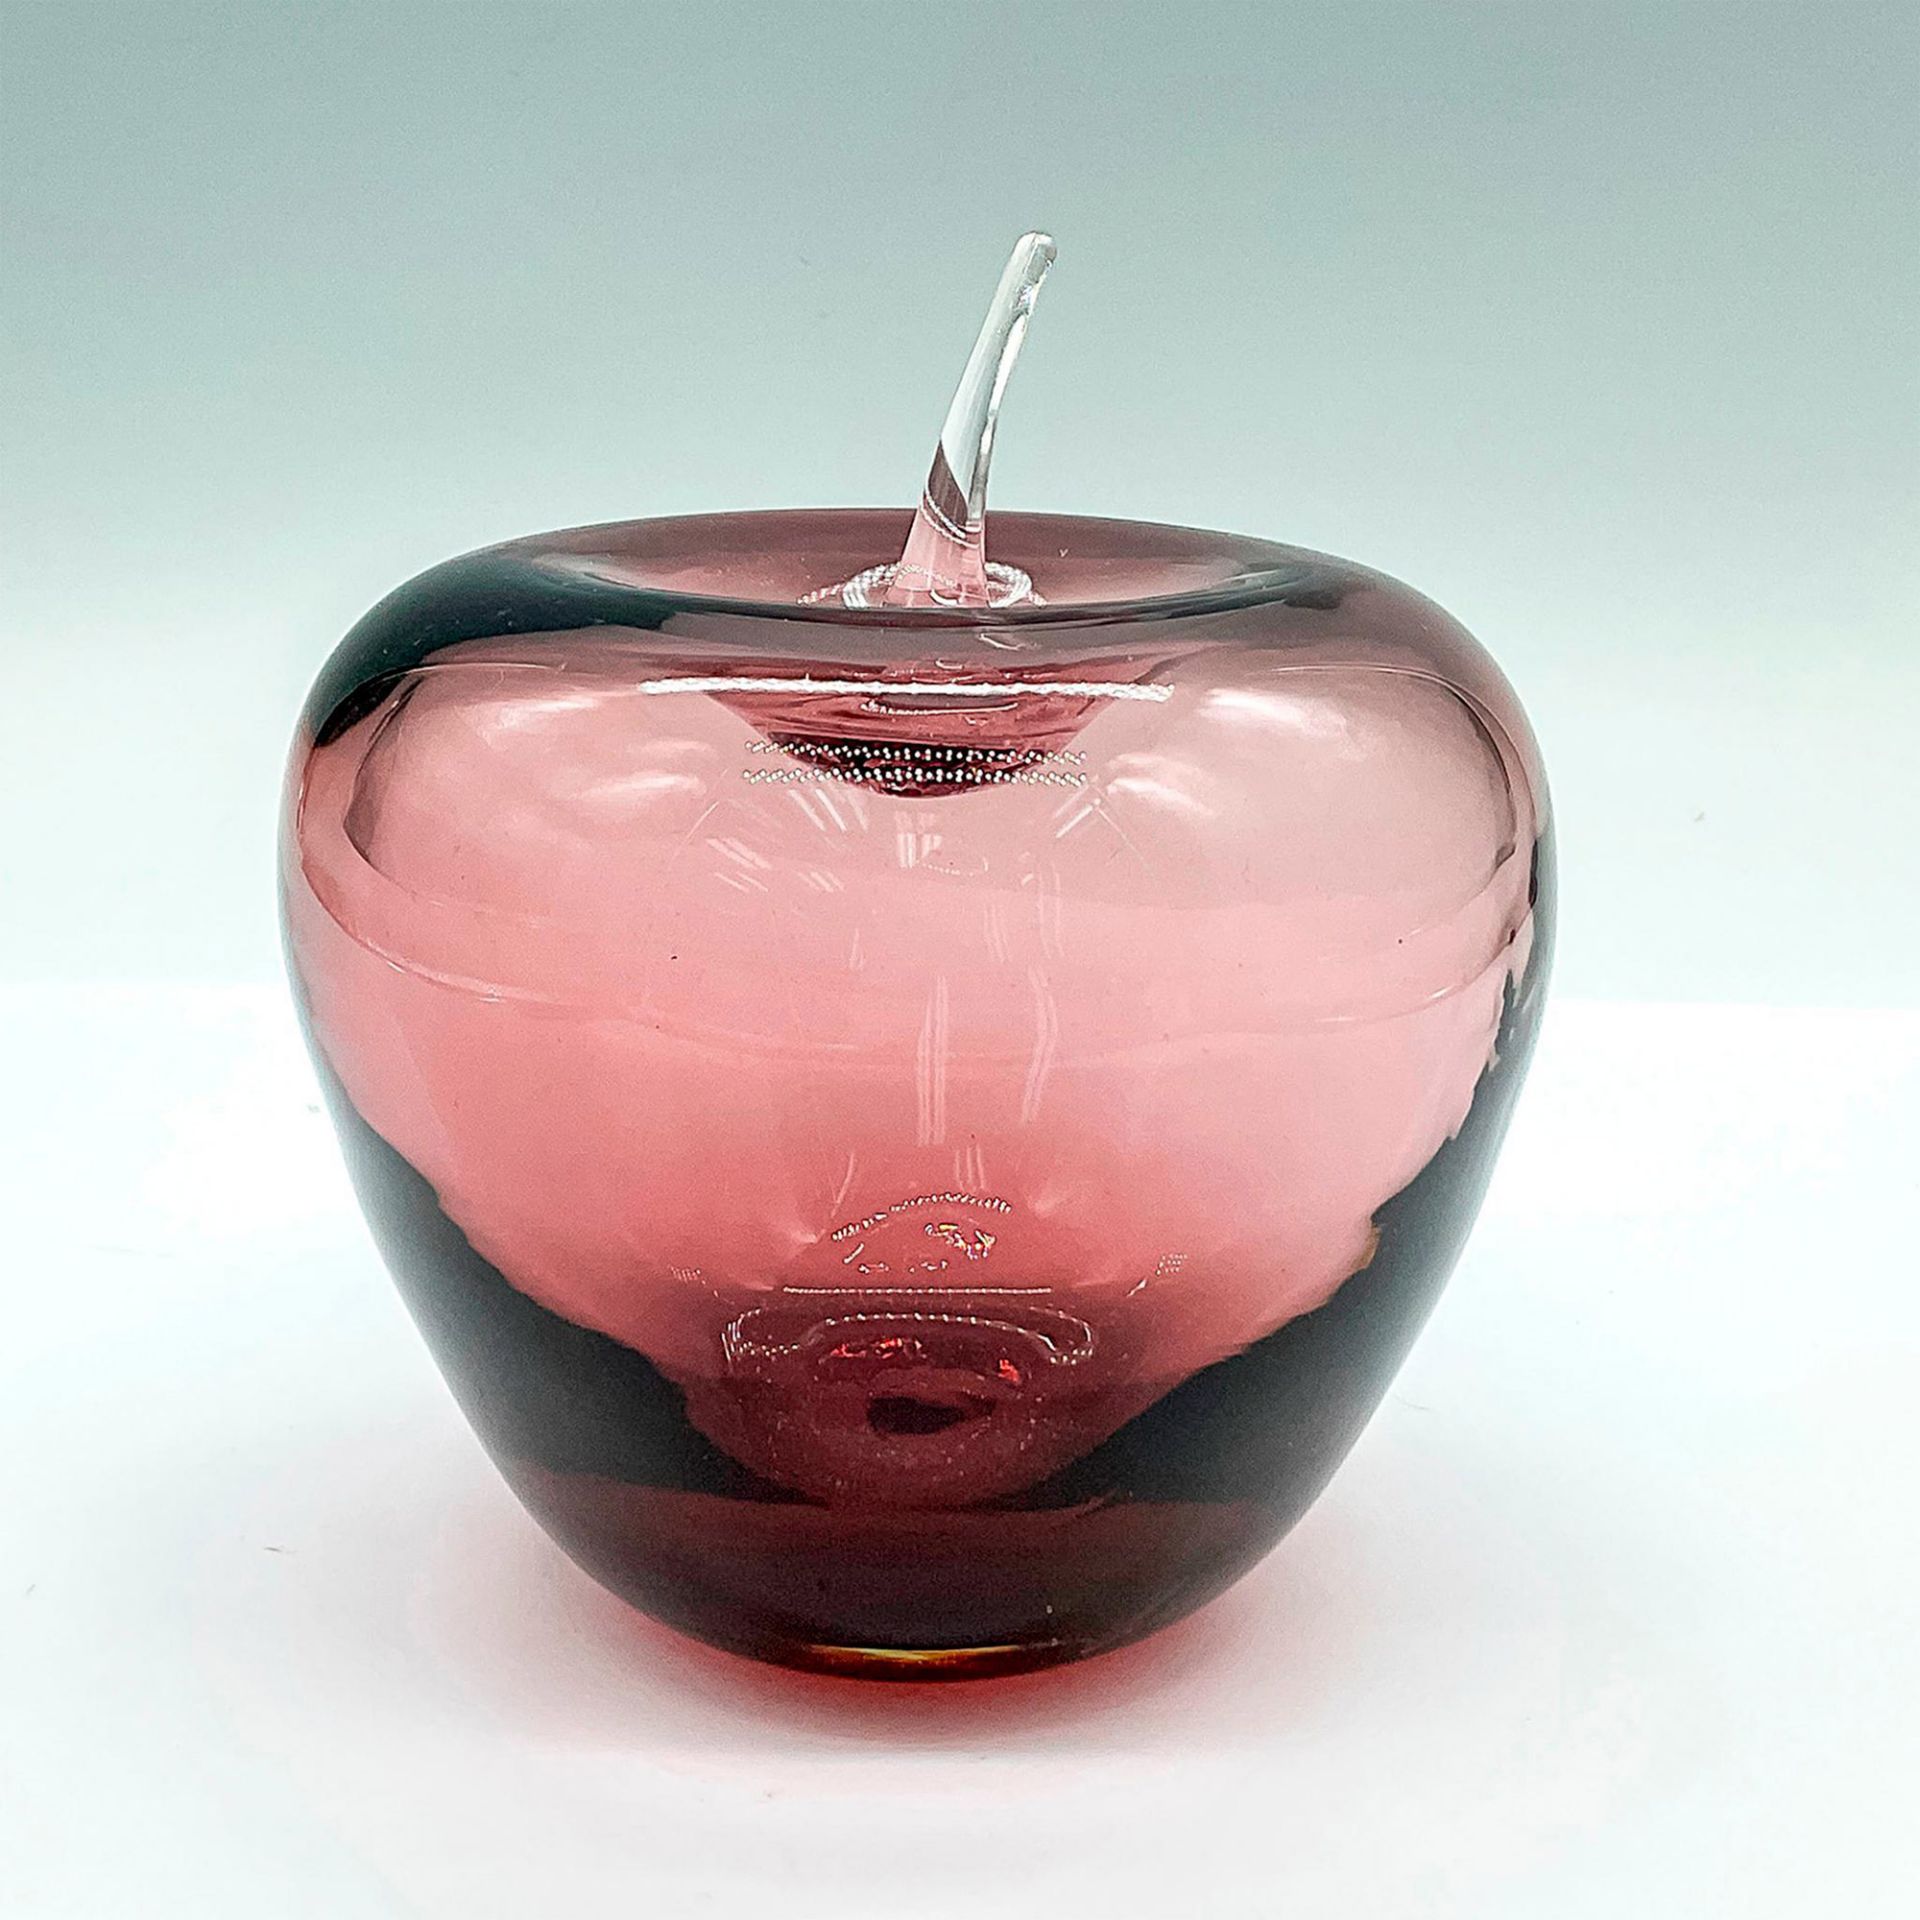 Vintage Blenko Art Glass Apple Figurine - Image 2 of 3